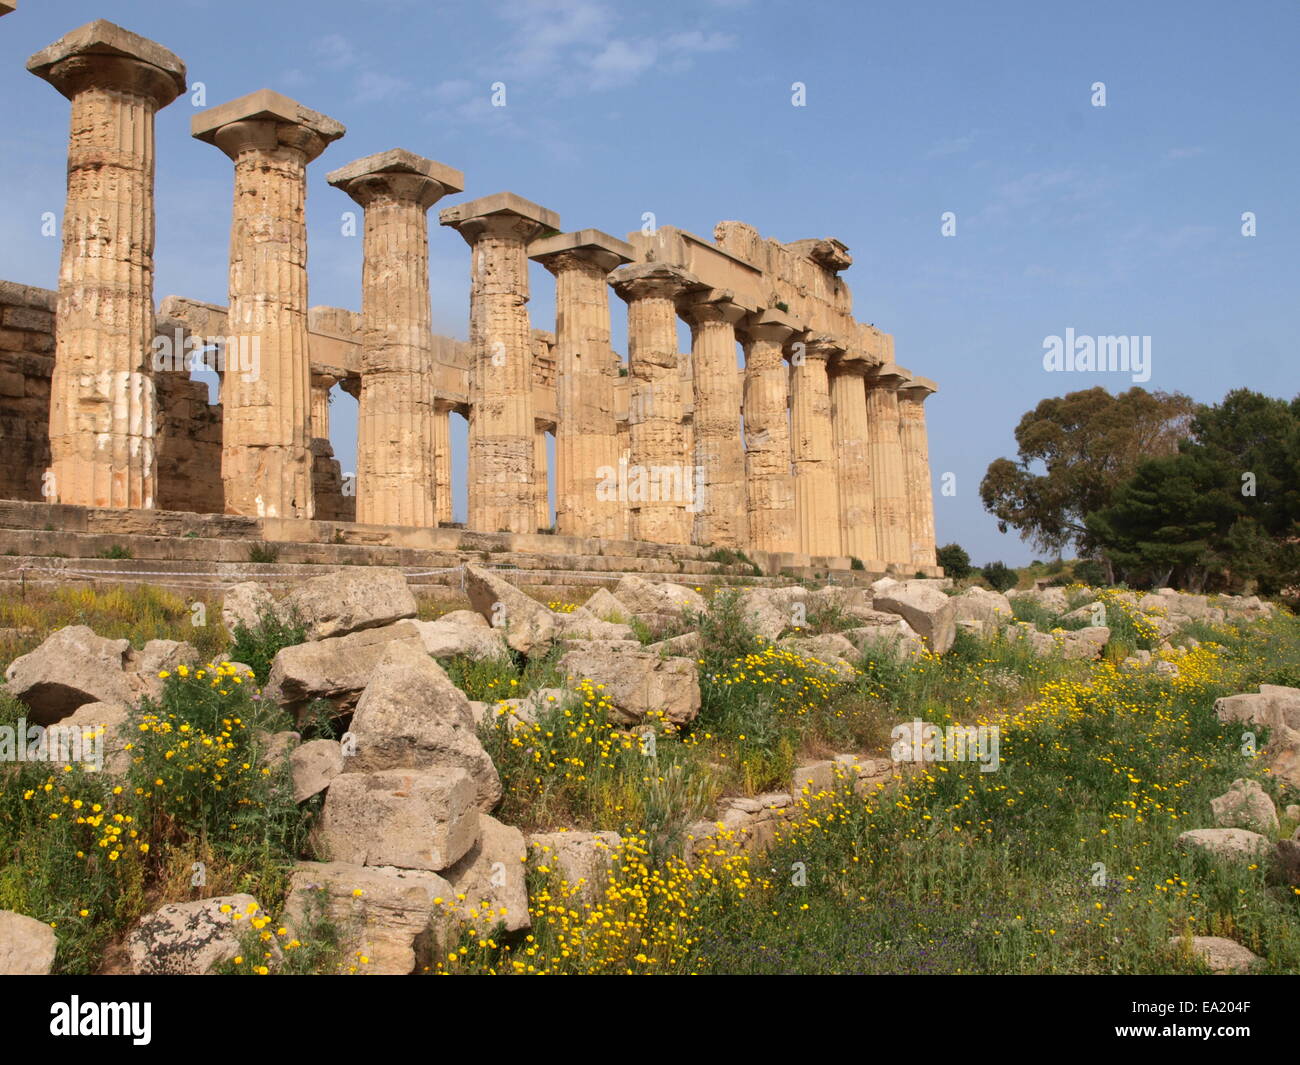 Temple of Hera (Temple E), Selinunte, Sicily Stock Photo